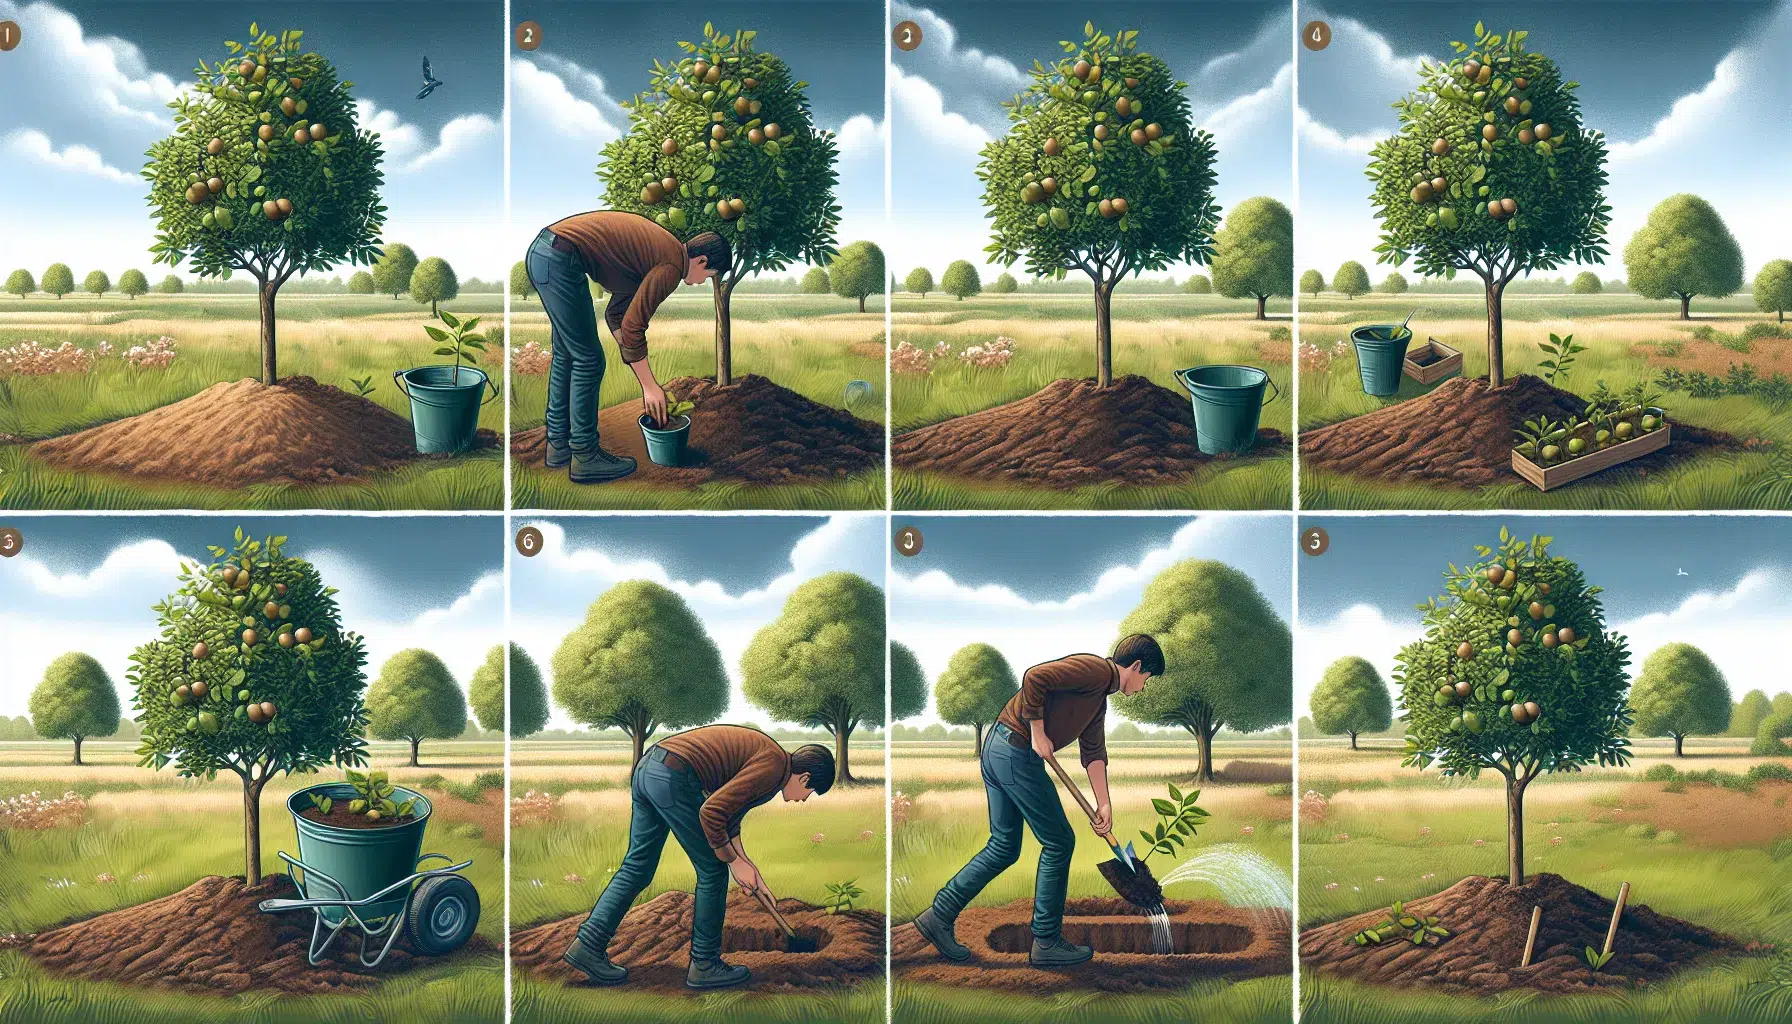 Imagen ilustrativa de un paso a paso para plantar árboles frutales en un jardín.